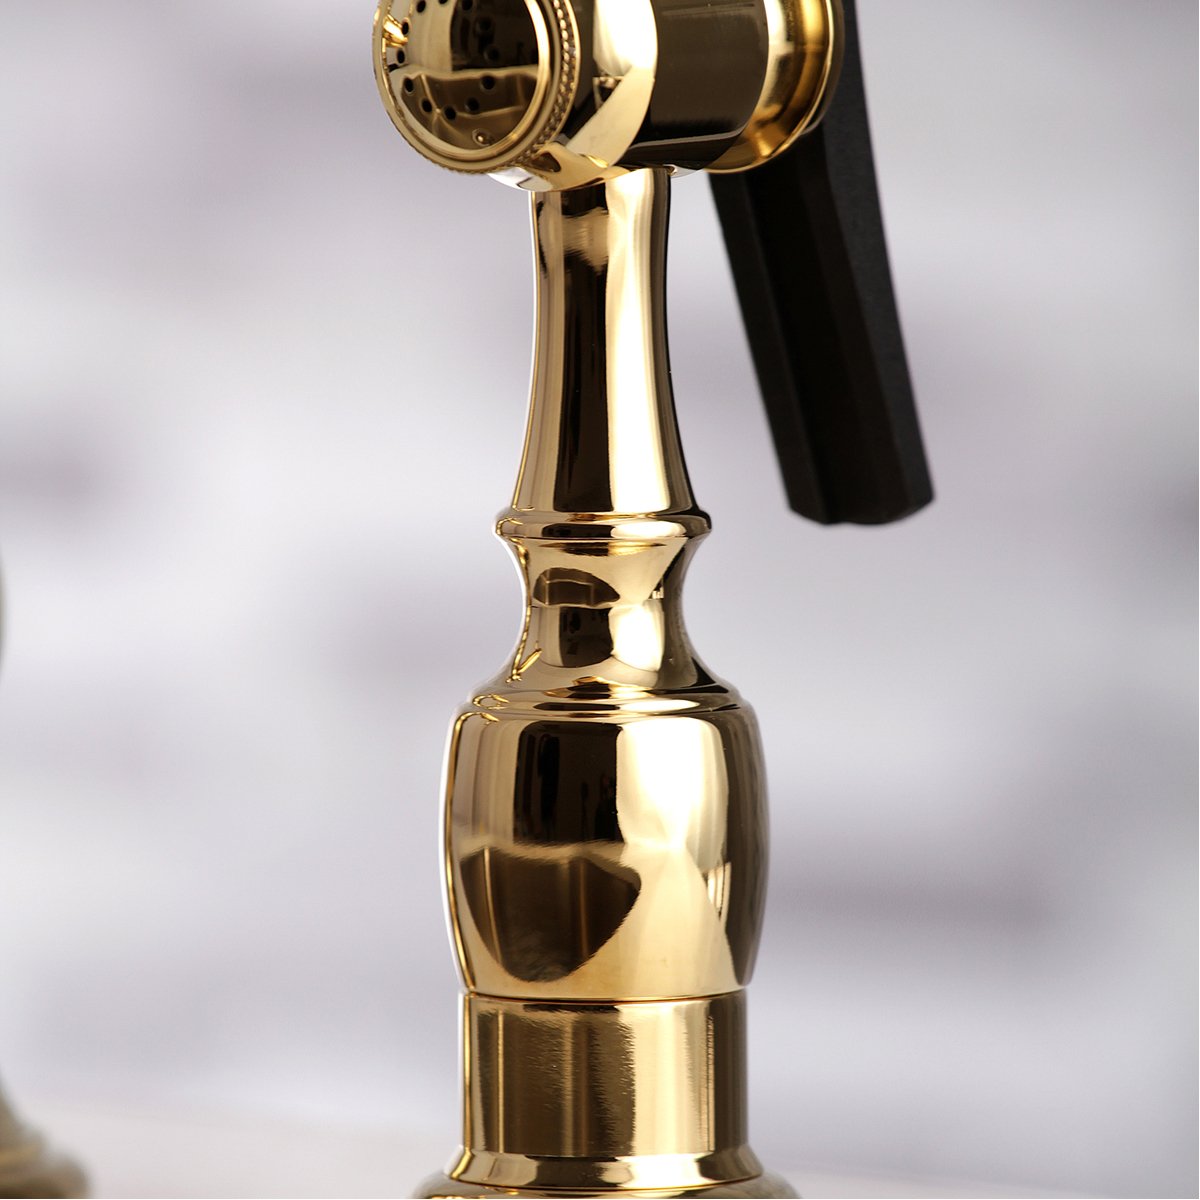 Kingston Brass Restoration Deck Mount 8" Bridge Kitchen Faucet with Sprayer